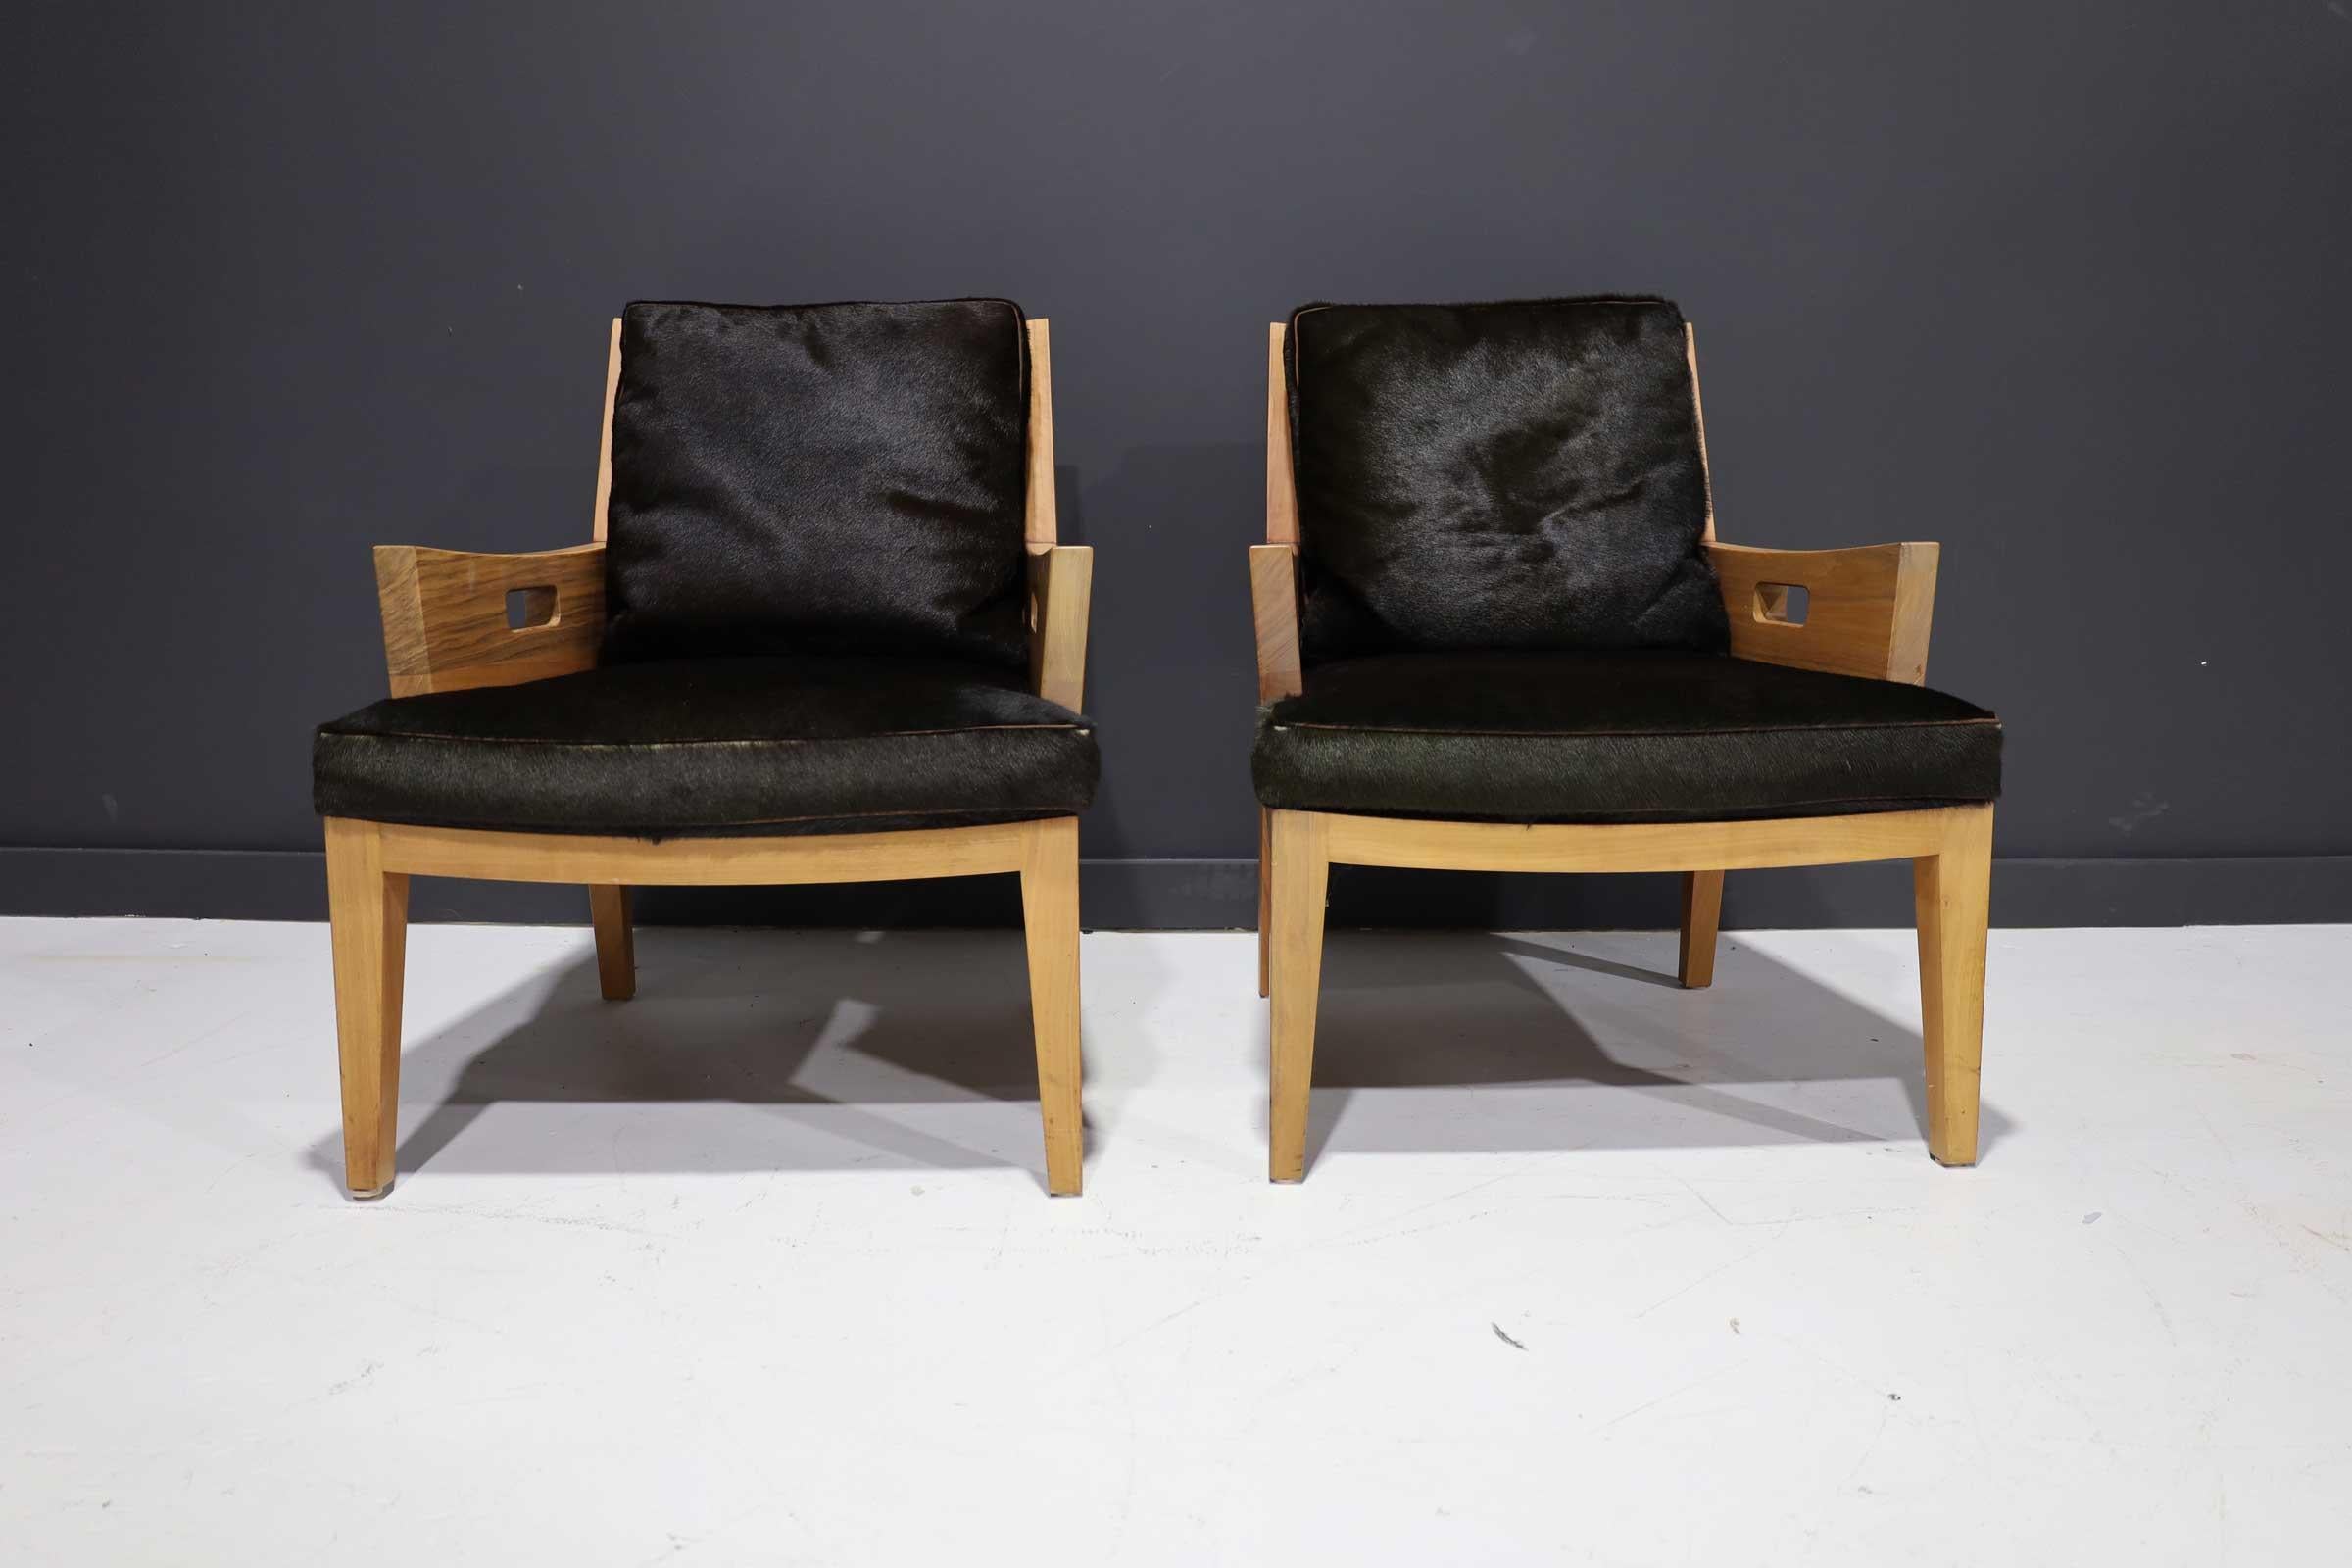 Fabriquée en Italie, cette chaise a un cadre en bois massif de noyer canaletto et des coussins en cuir noir. La chaise n'est plus en production. Vendue à plus de 7500 dollars la chaise.